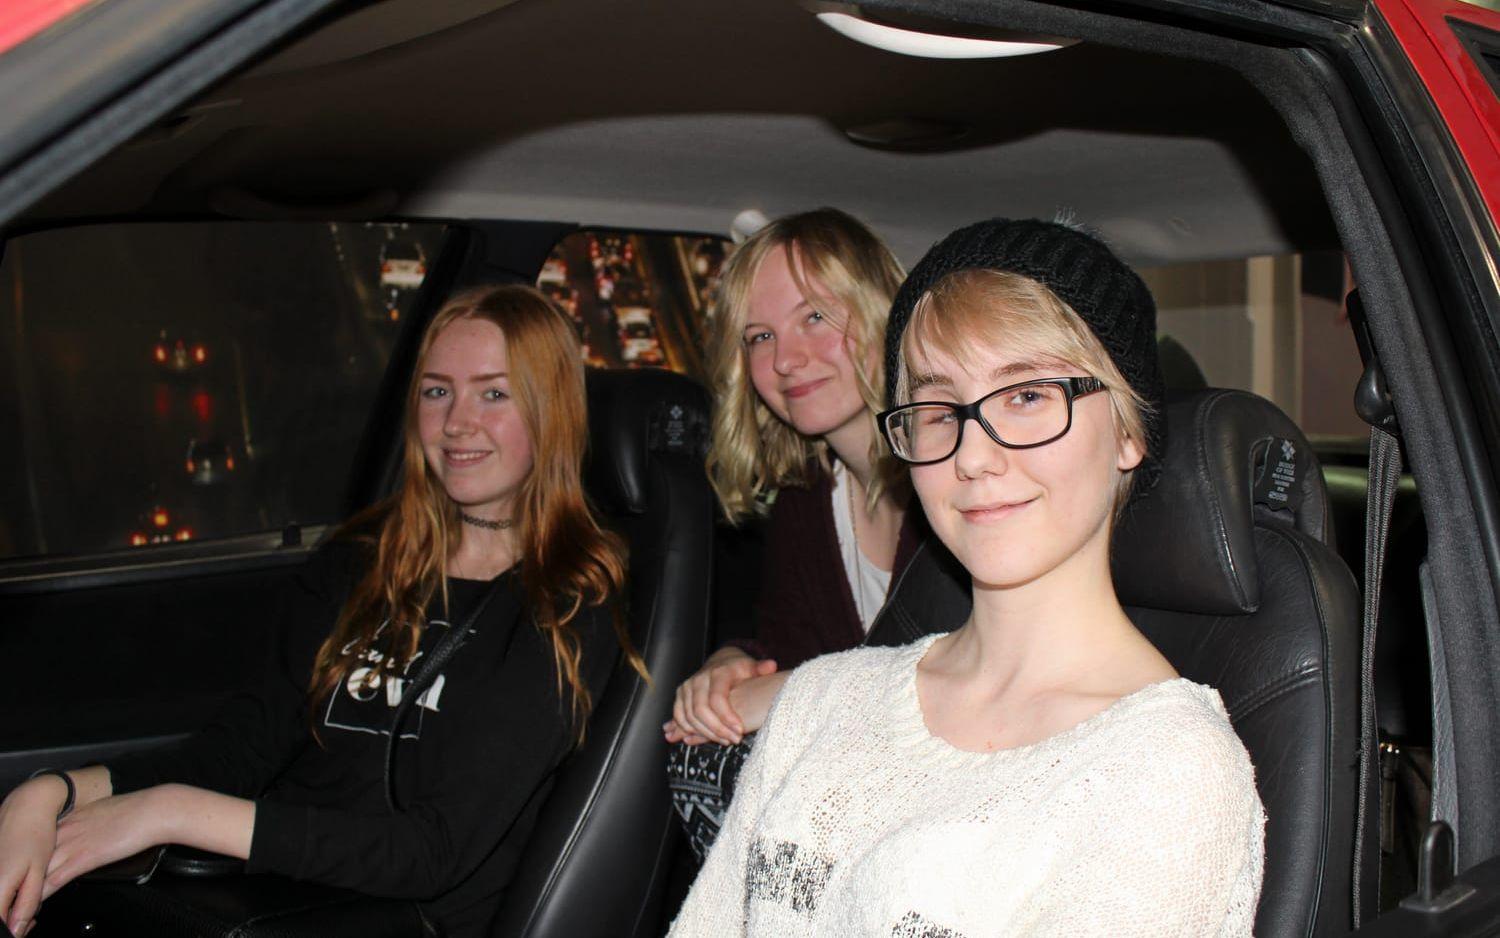 Trion Veronica Berggren, Rosanna Hygren och Malin Persson läser design och stod bakom kameran när eleverna gjorde filmen om hur Saabs historia började. Bild: Mari-Louise Anderstedt